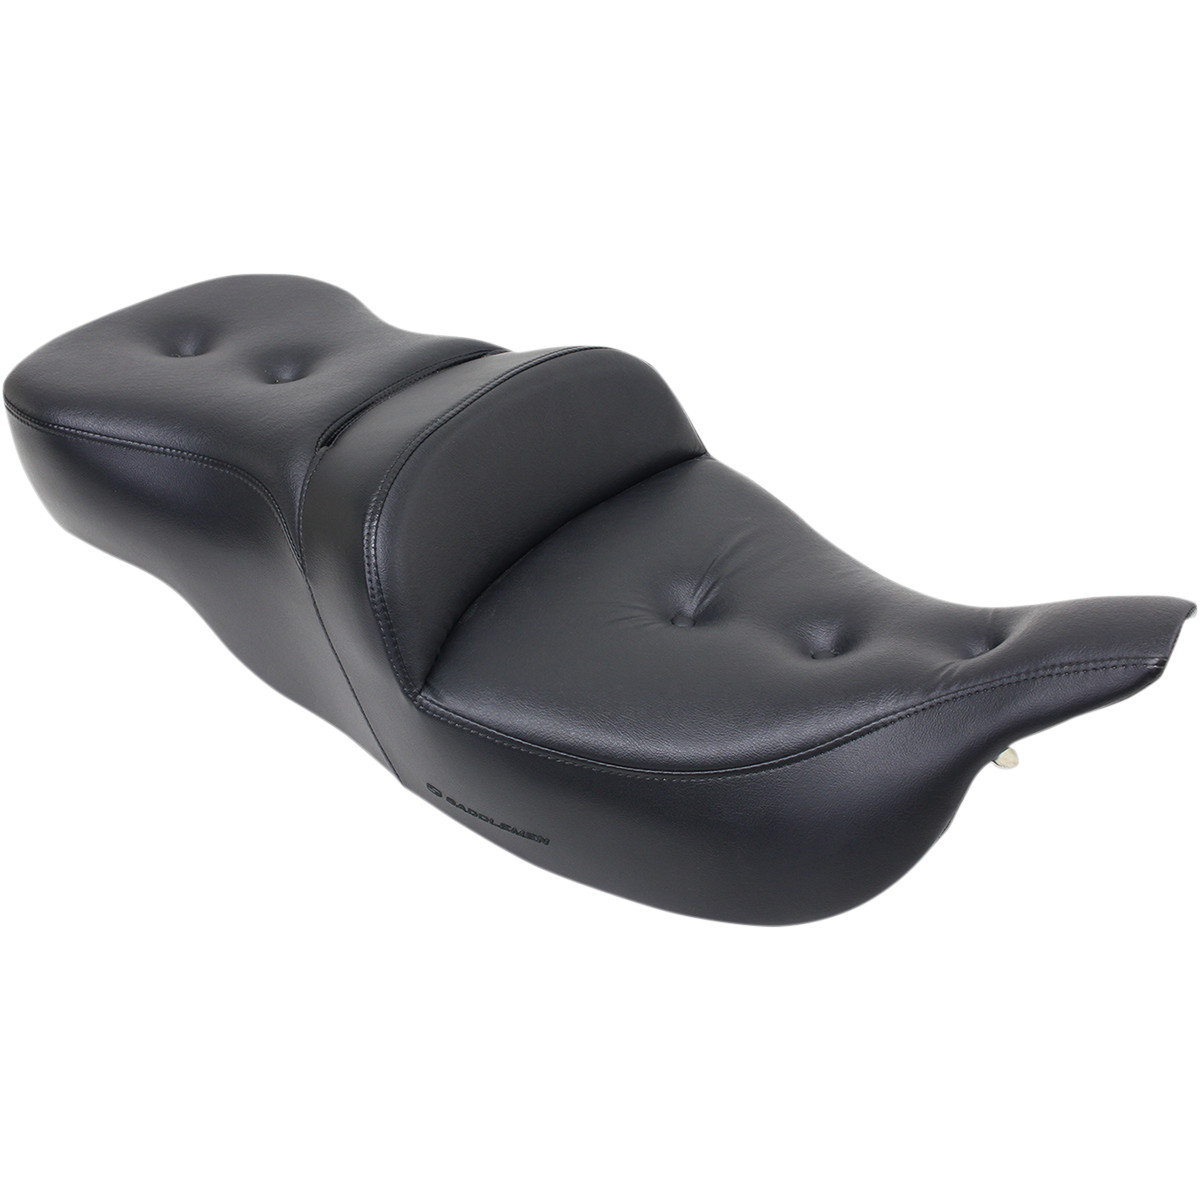 HARLEY DAVIDSON FLT, FLHT, FLTR 2-UP SEAT ROAD SOFA PT FRONT|REAR SADDLEGEL™ PLAIN BLACK